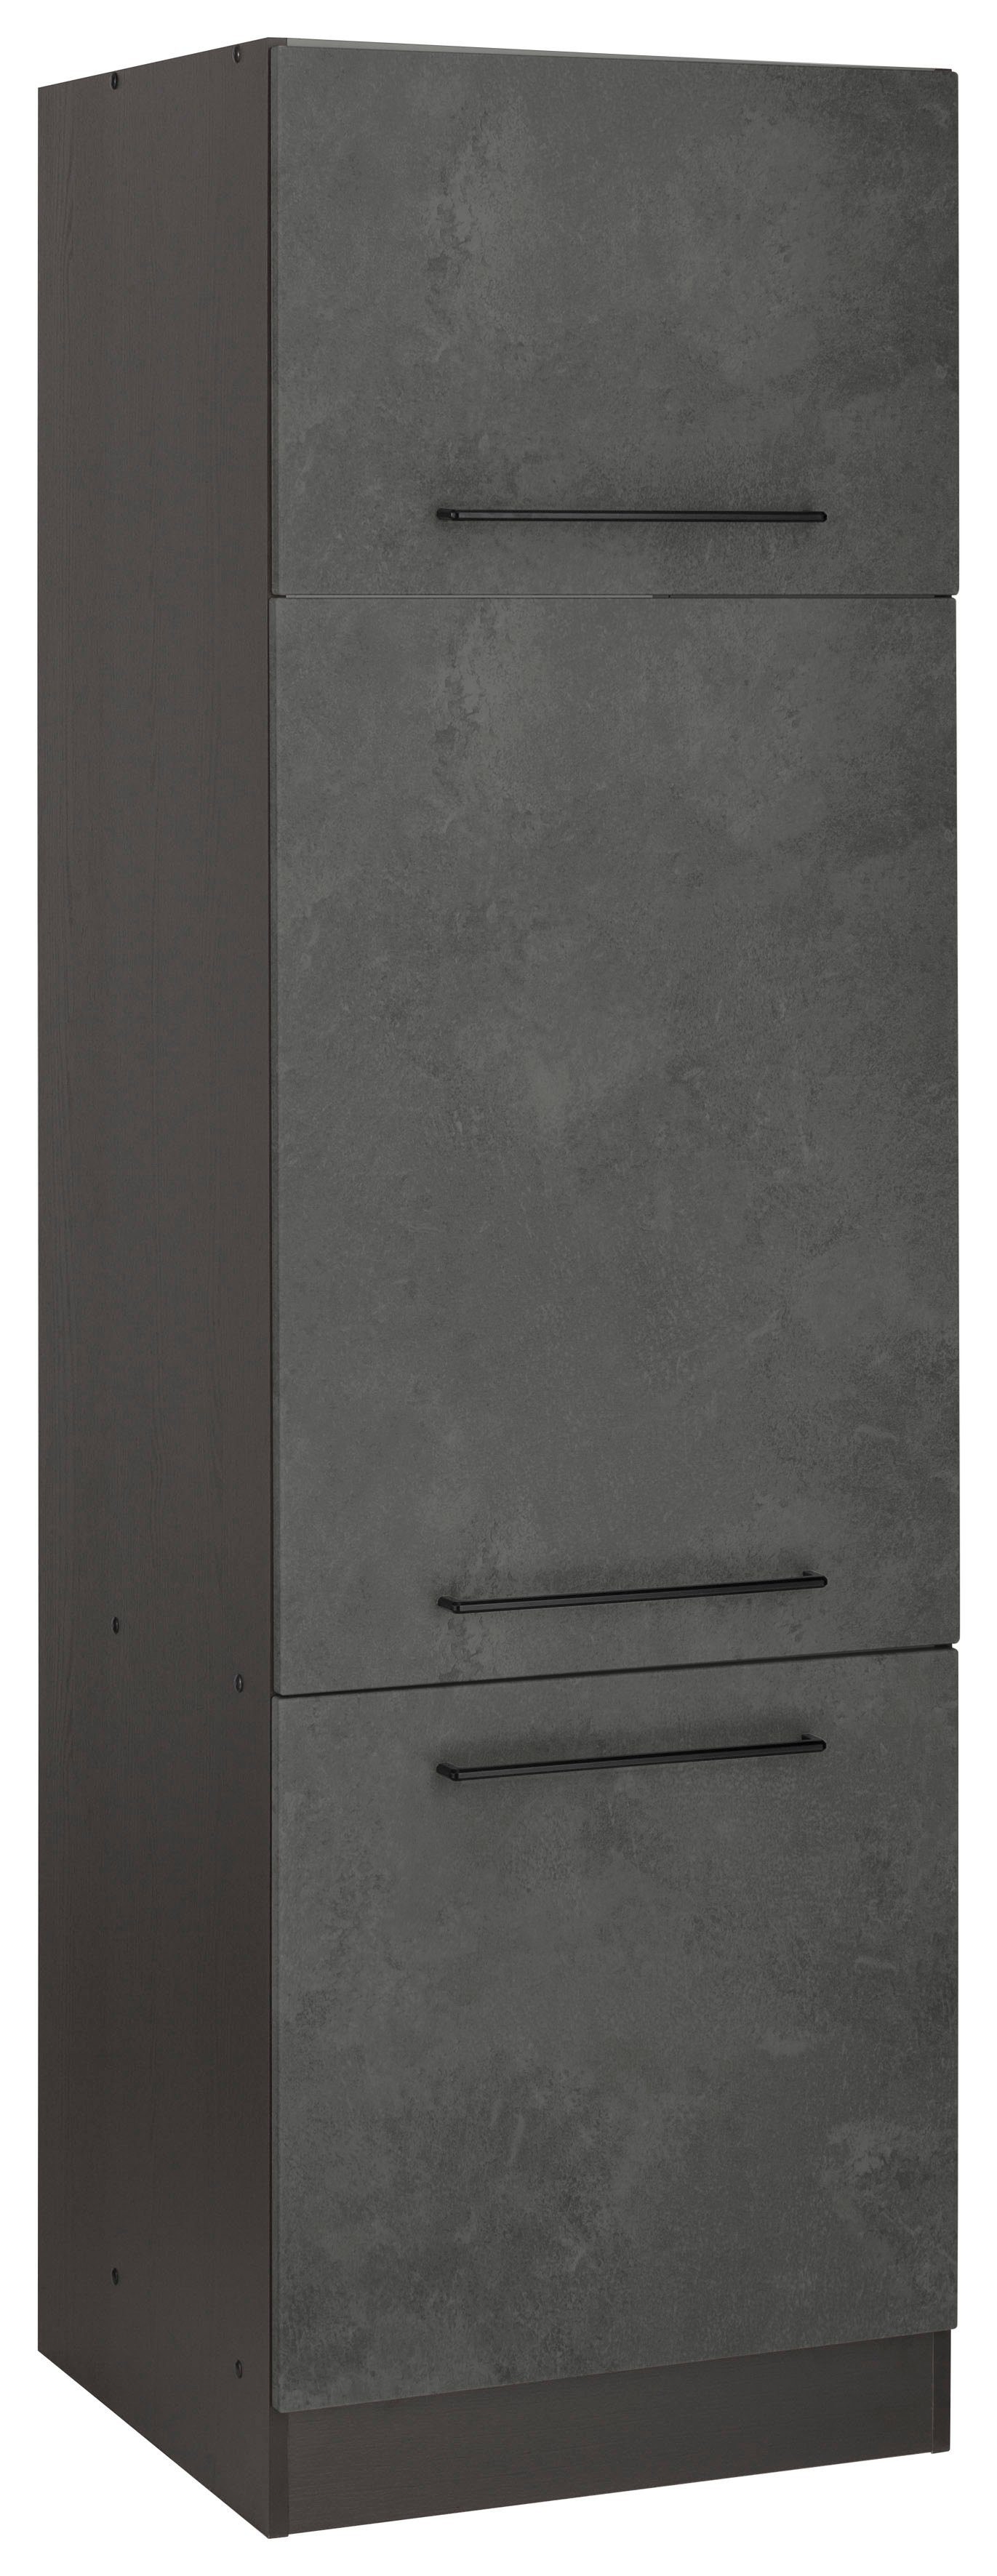 HELD MÖBEL Kühlumbauschrank Tulsa 60 cm breit, 200 cm hoch, 3 Türen, schwarzer Metallgriff betonfarben dunkel | grafit